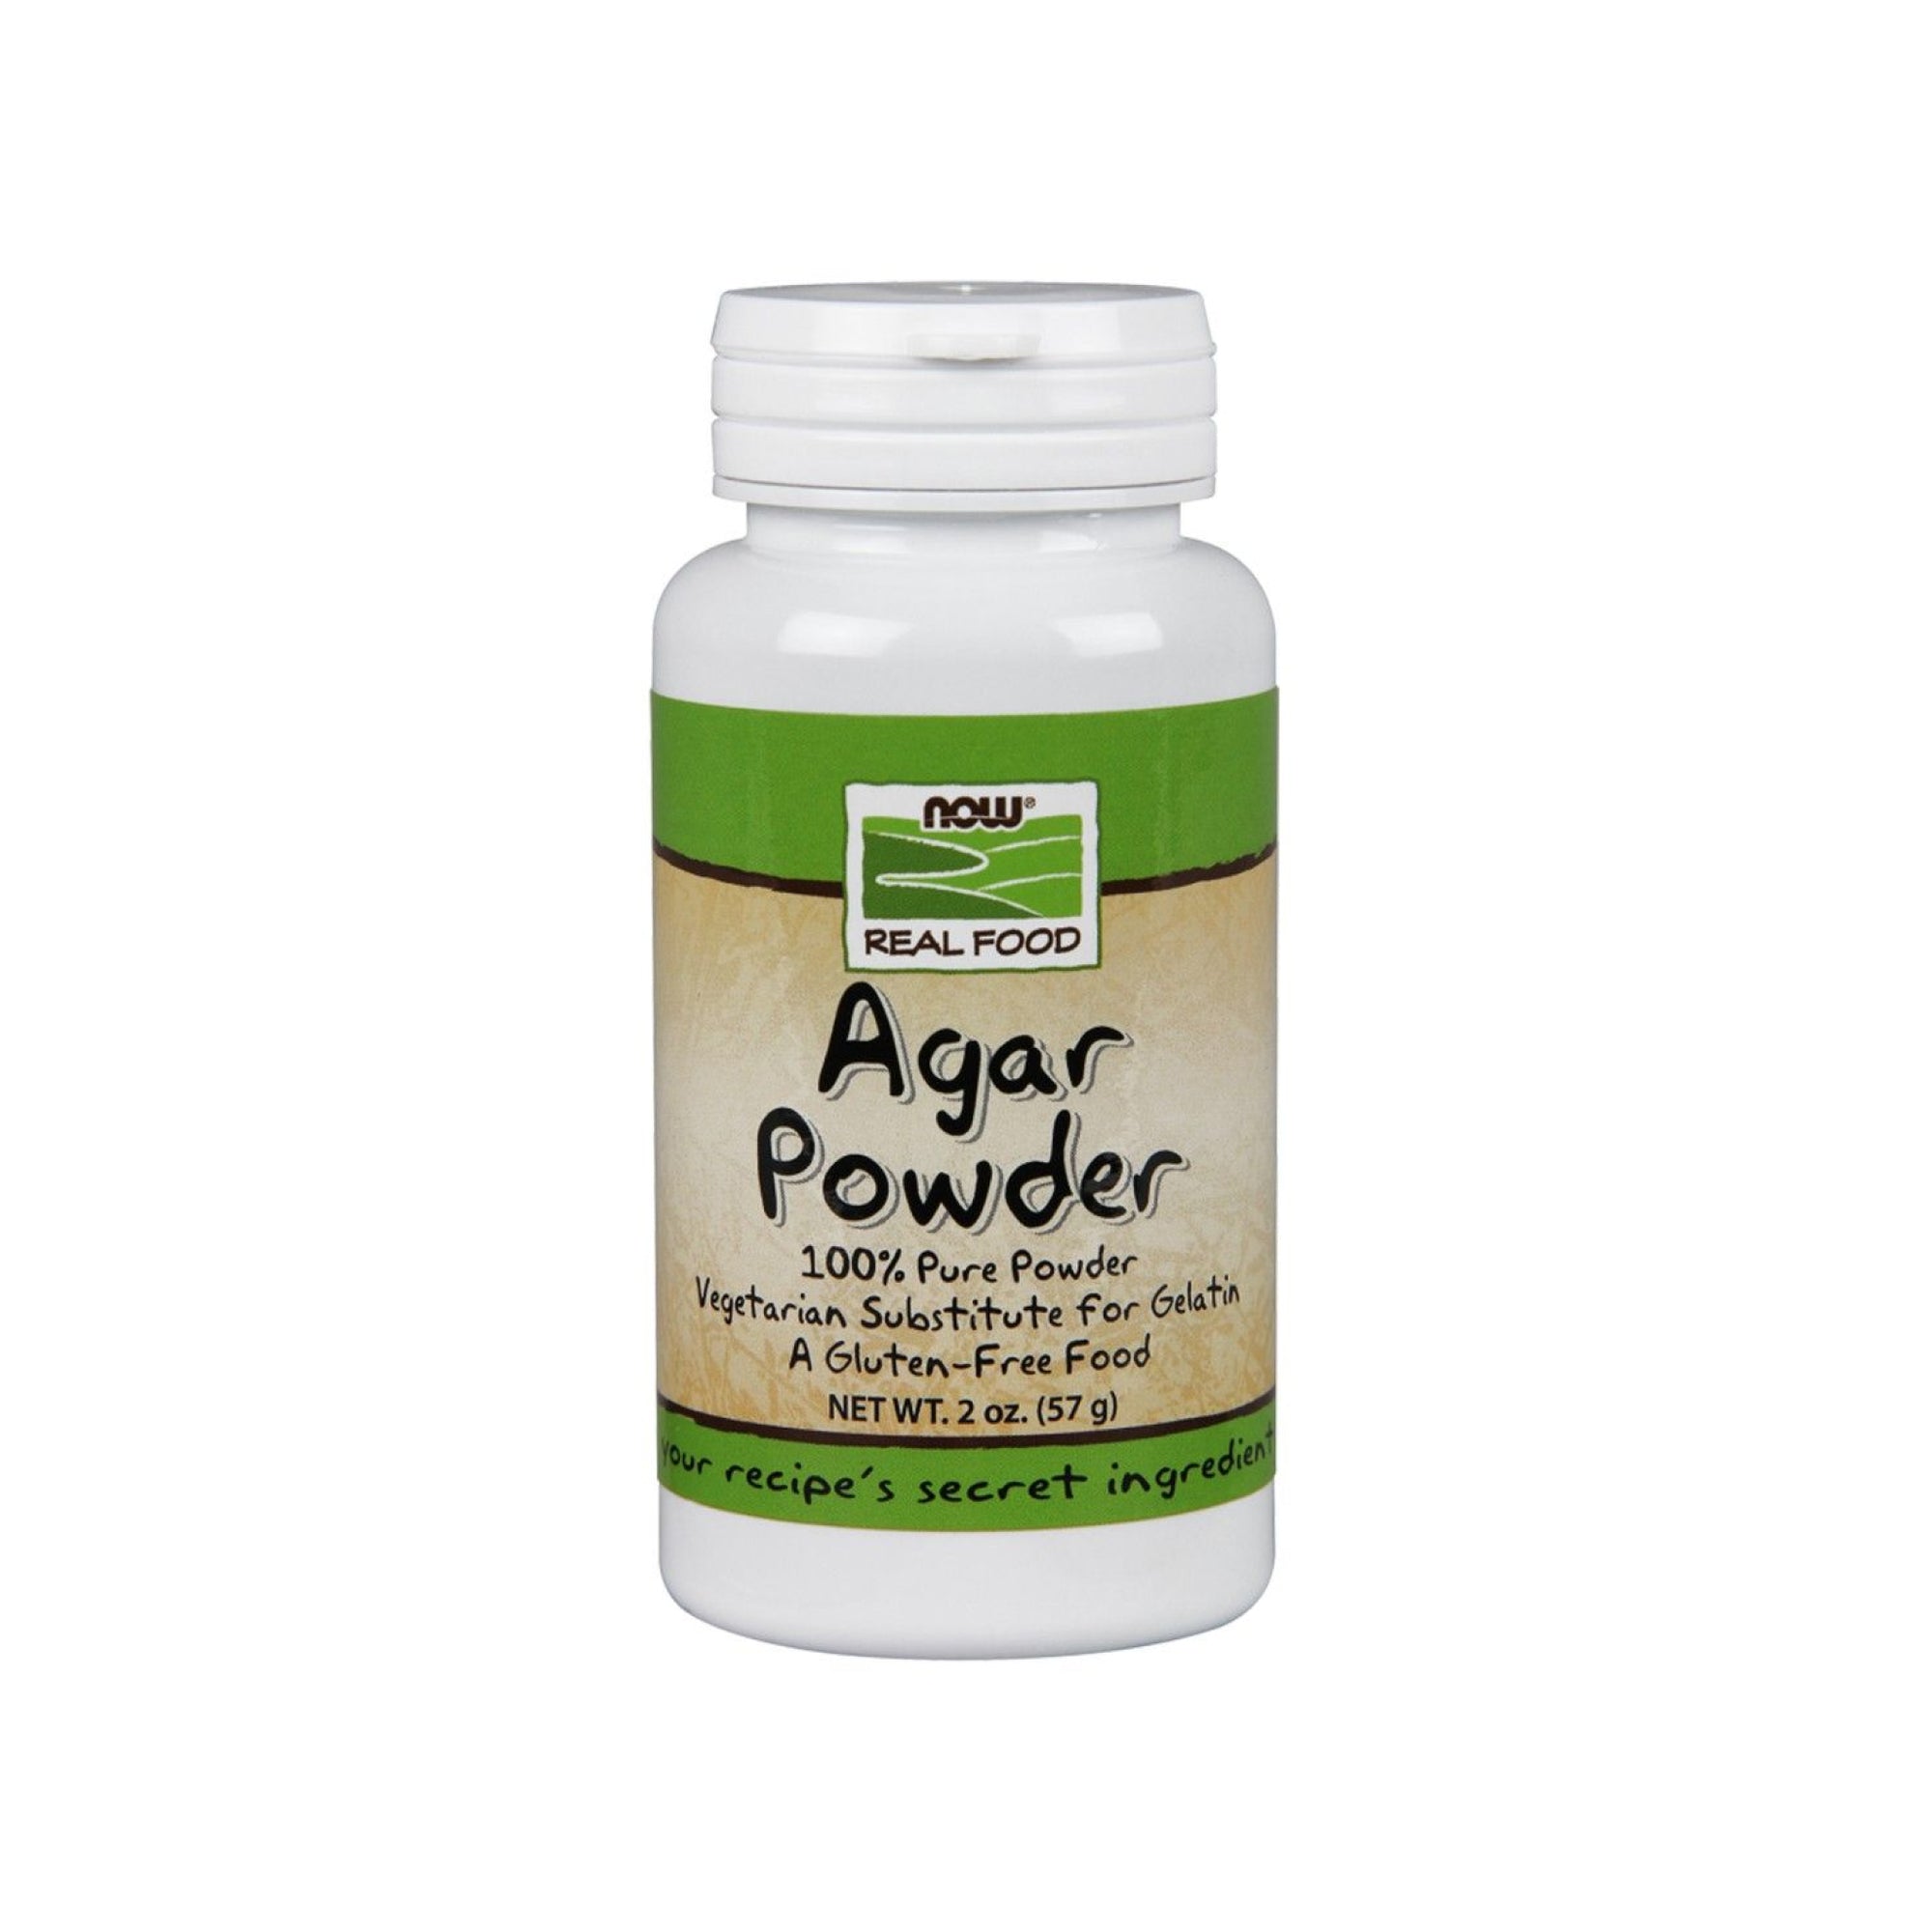 Now Agar Powder 57g